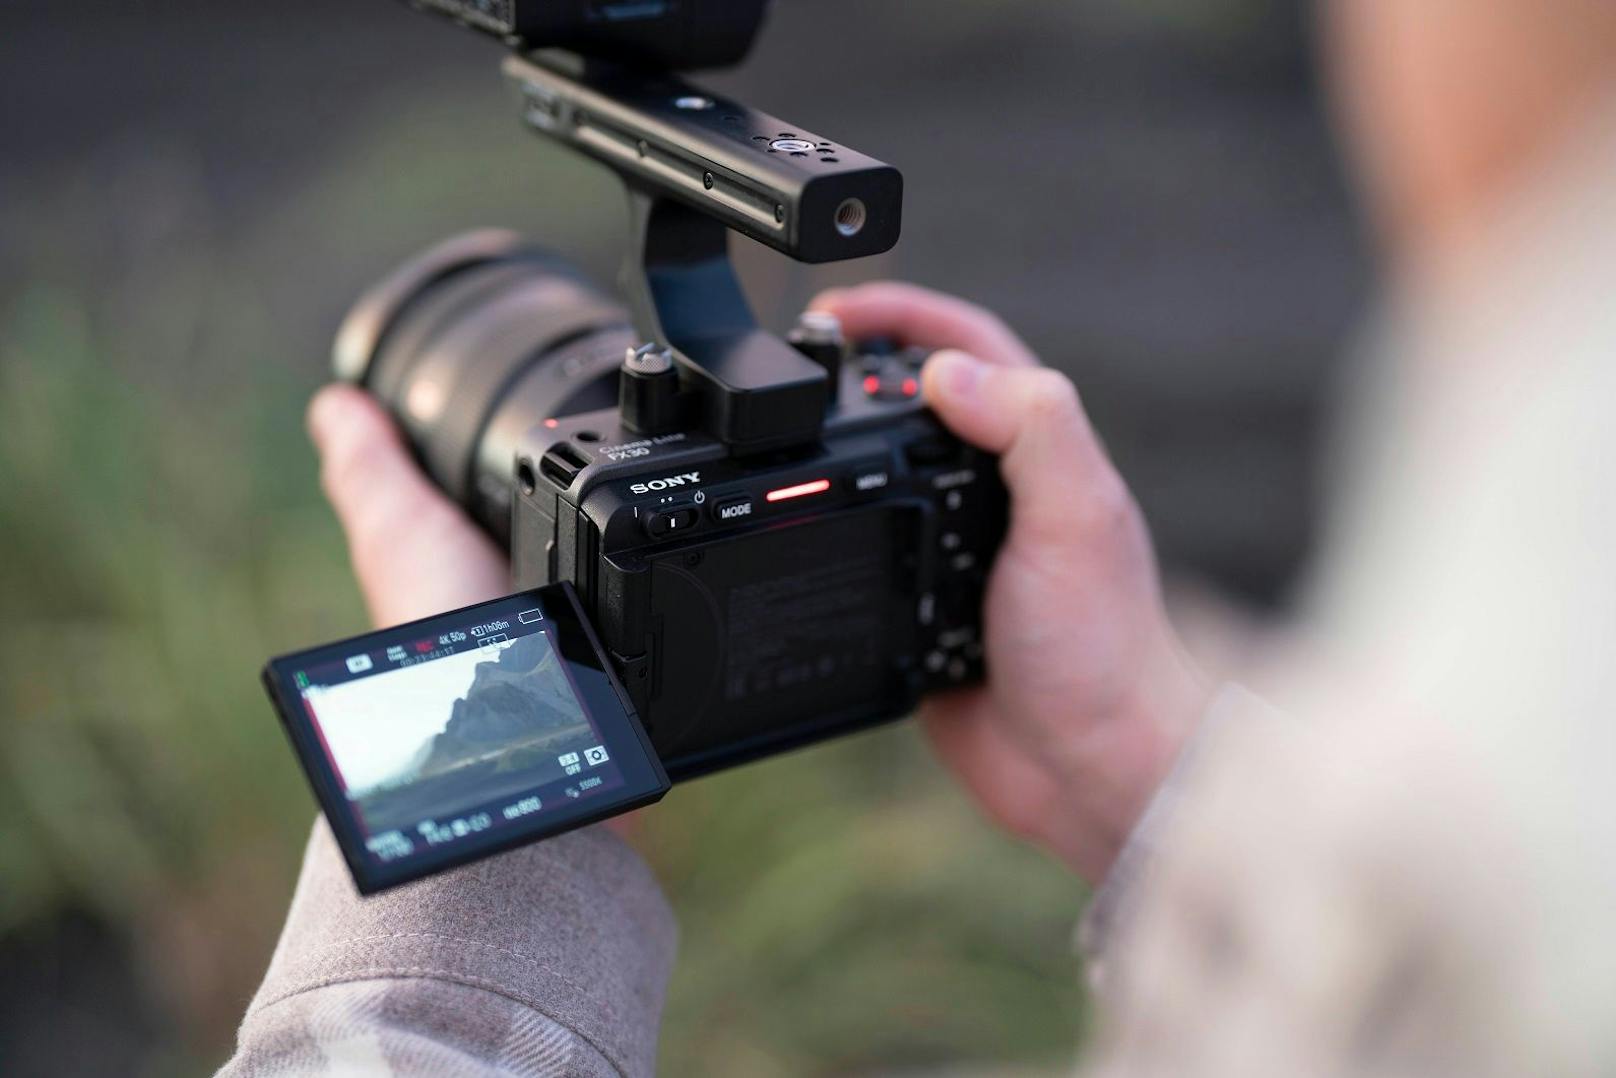 Sony erweitert die Cinema Line um eine neue 4K Super 35-Kamera für aufstrebende Filmemacher.